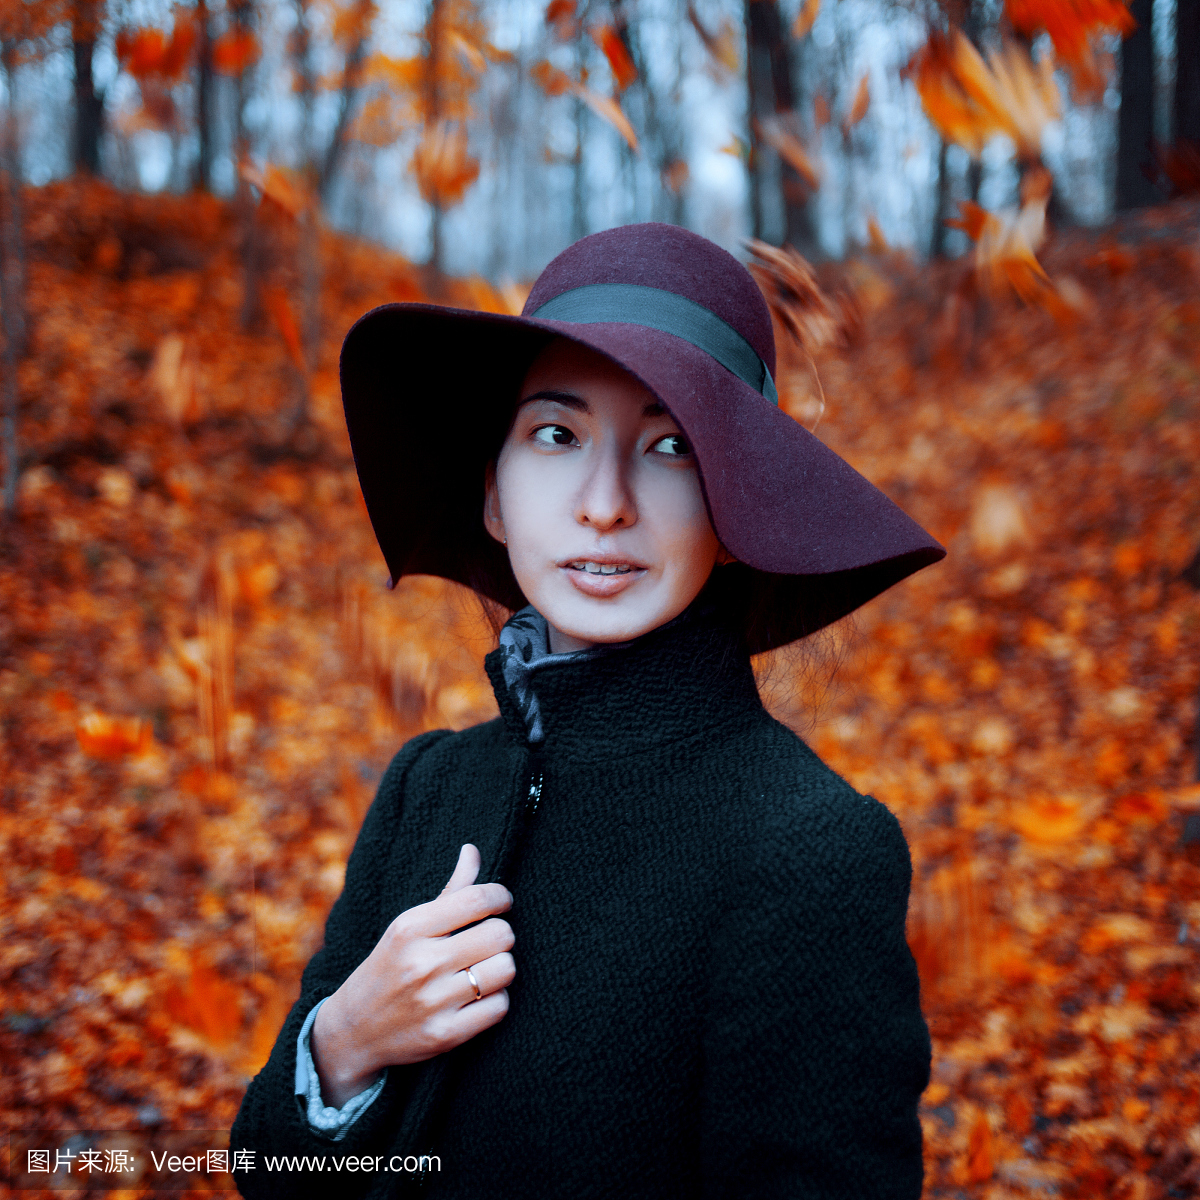 年轻时尚的女孩在外套和帽子,秋季服装,背景的